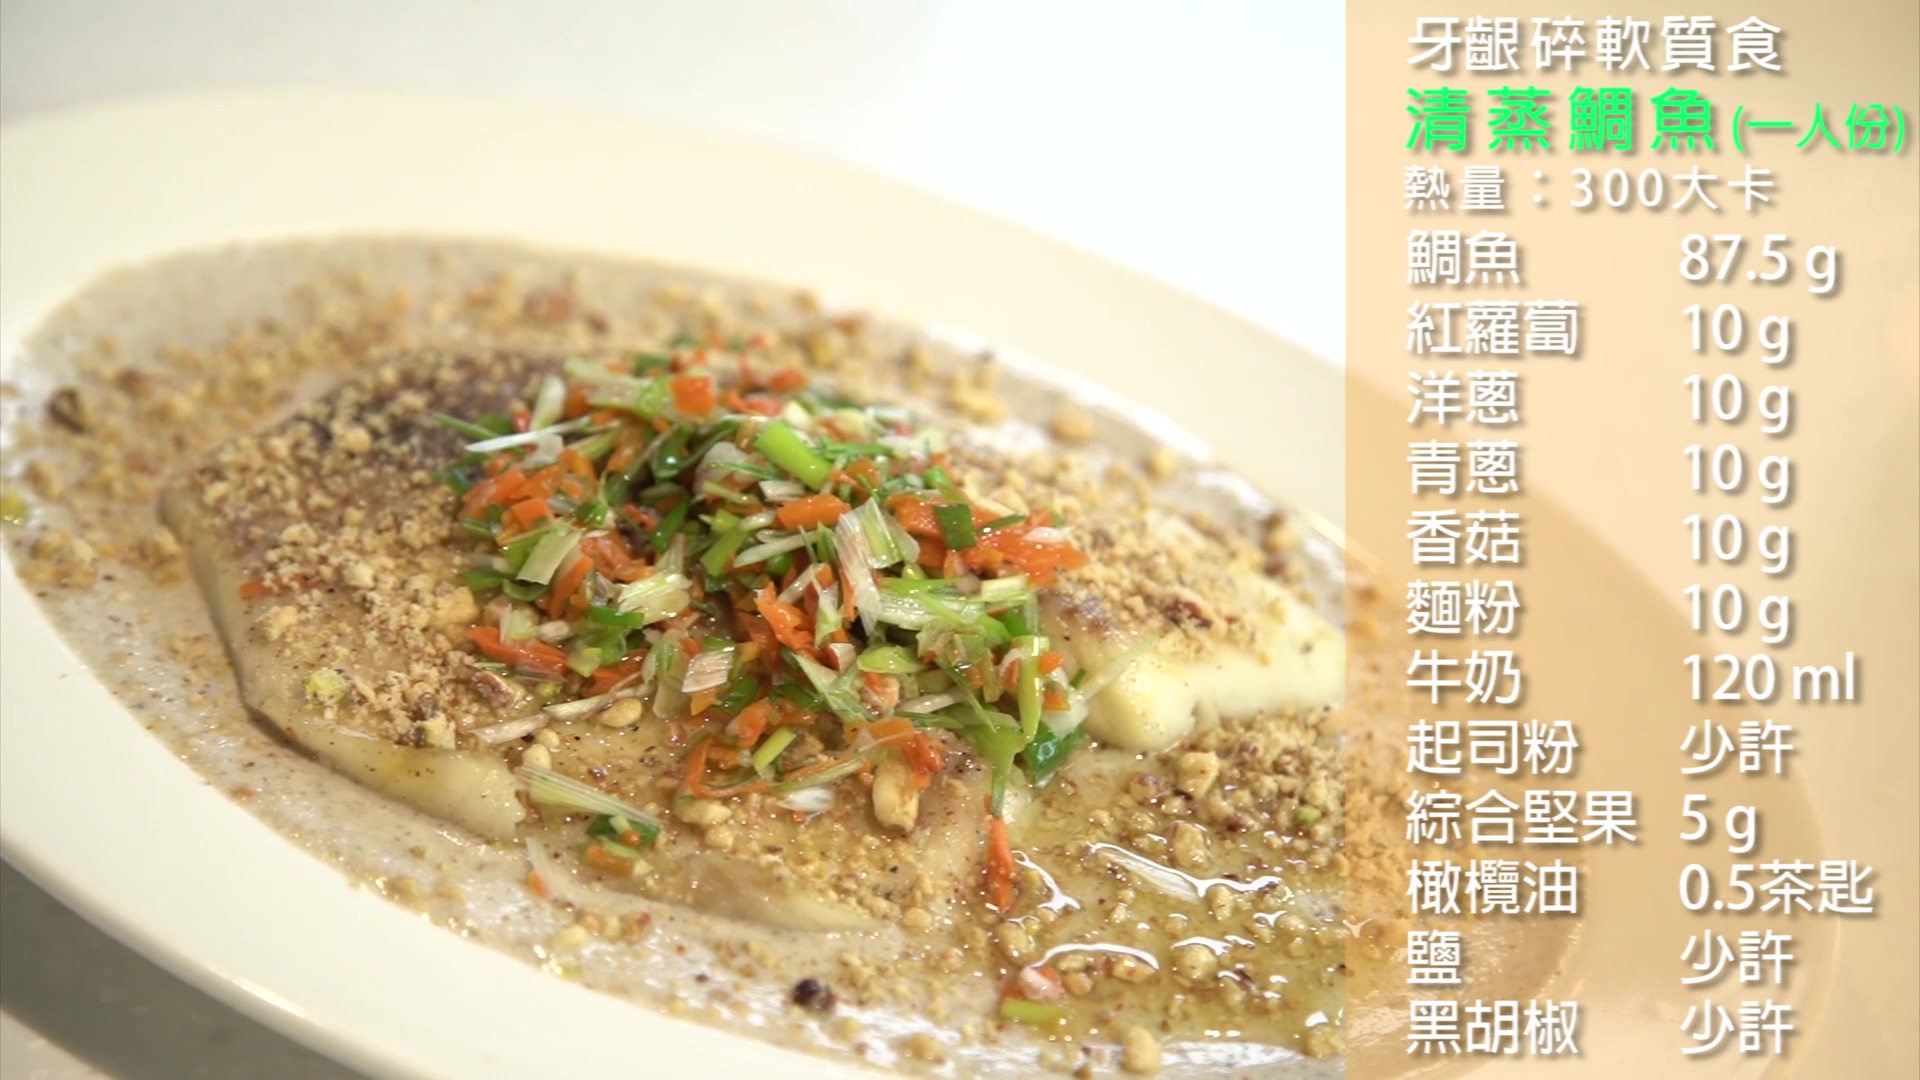 飲食質地料理影片-牙齦碎軟質食-清蒸鯛魚篇